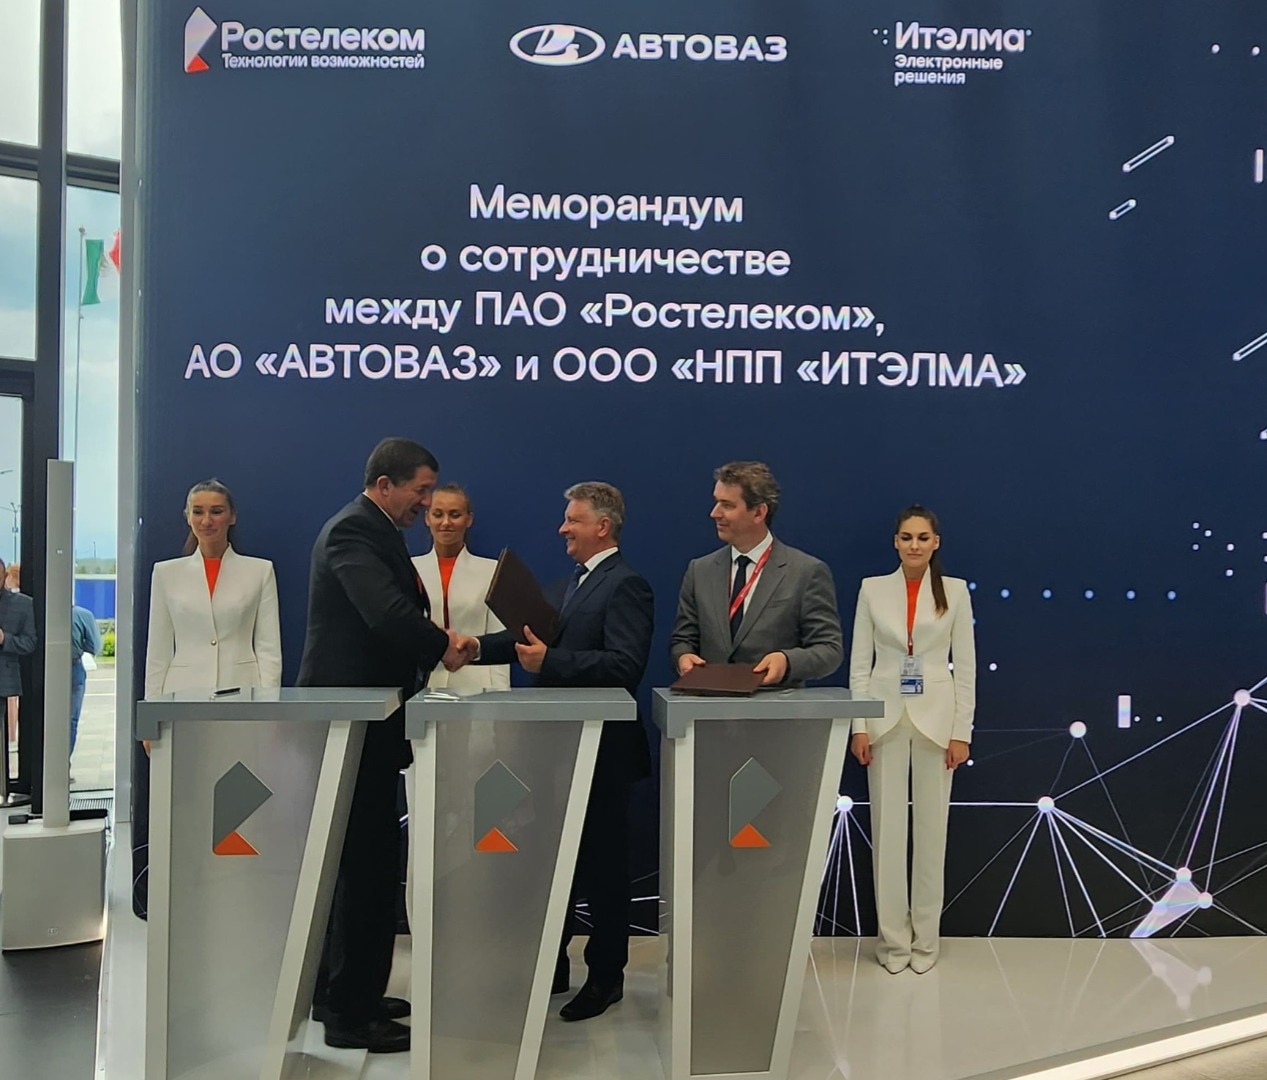 АВТОВАЗ интегрирует операционную систему «Аврора» в российские автомобили